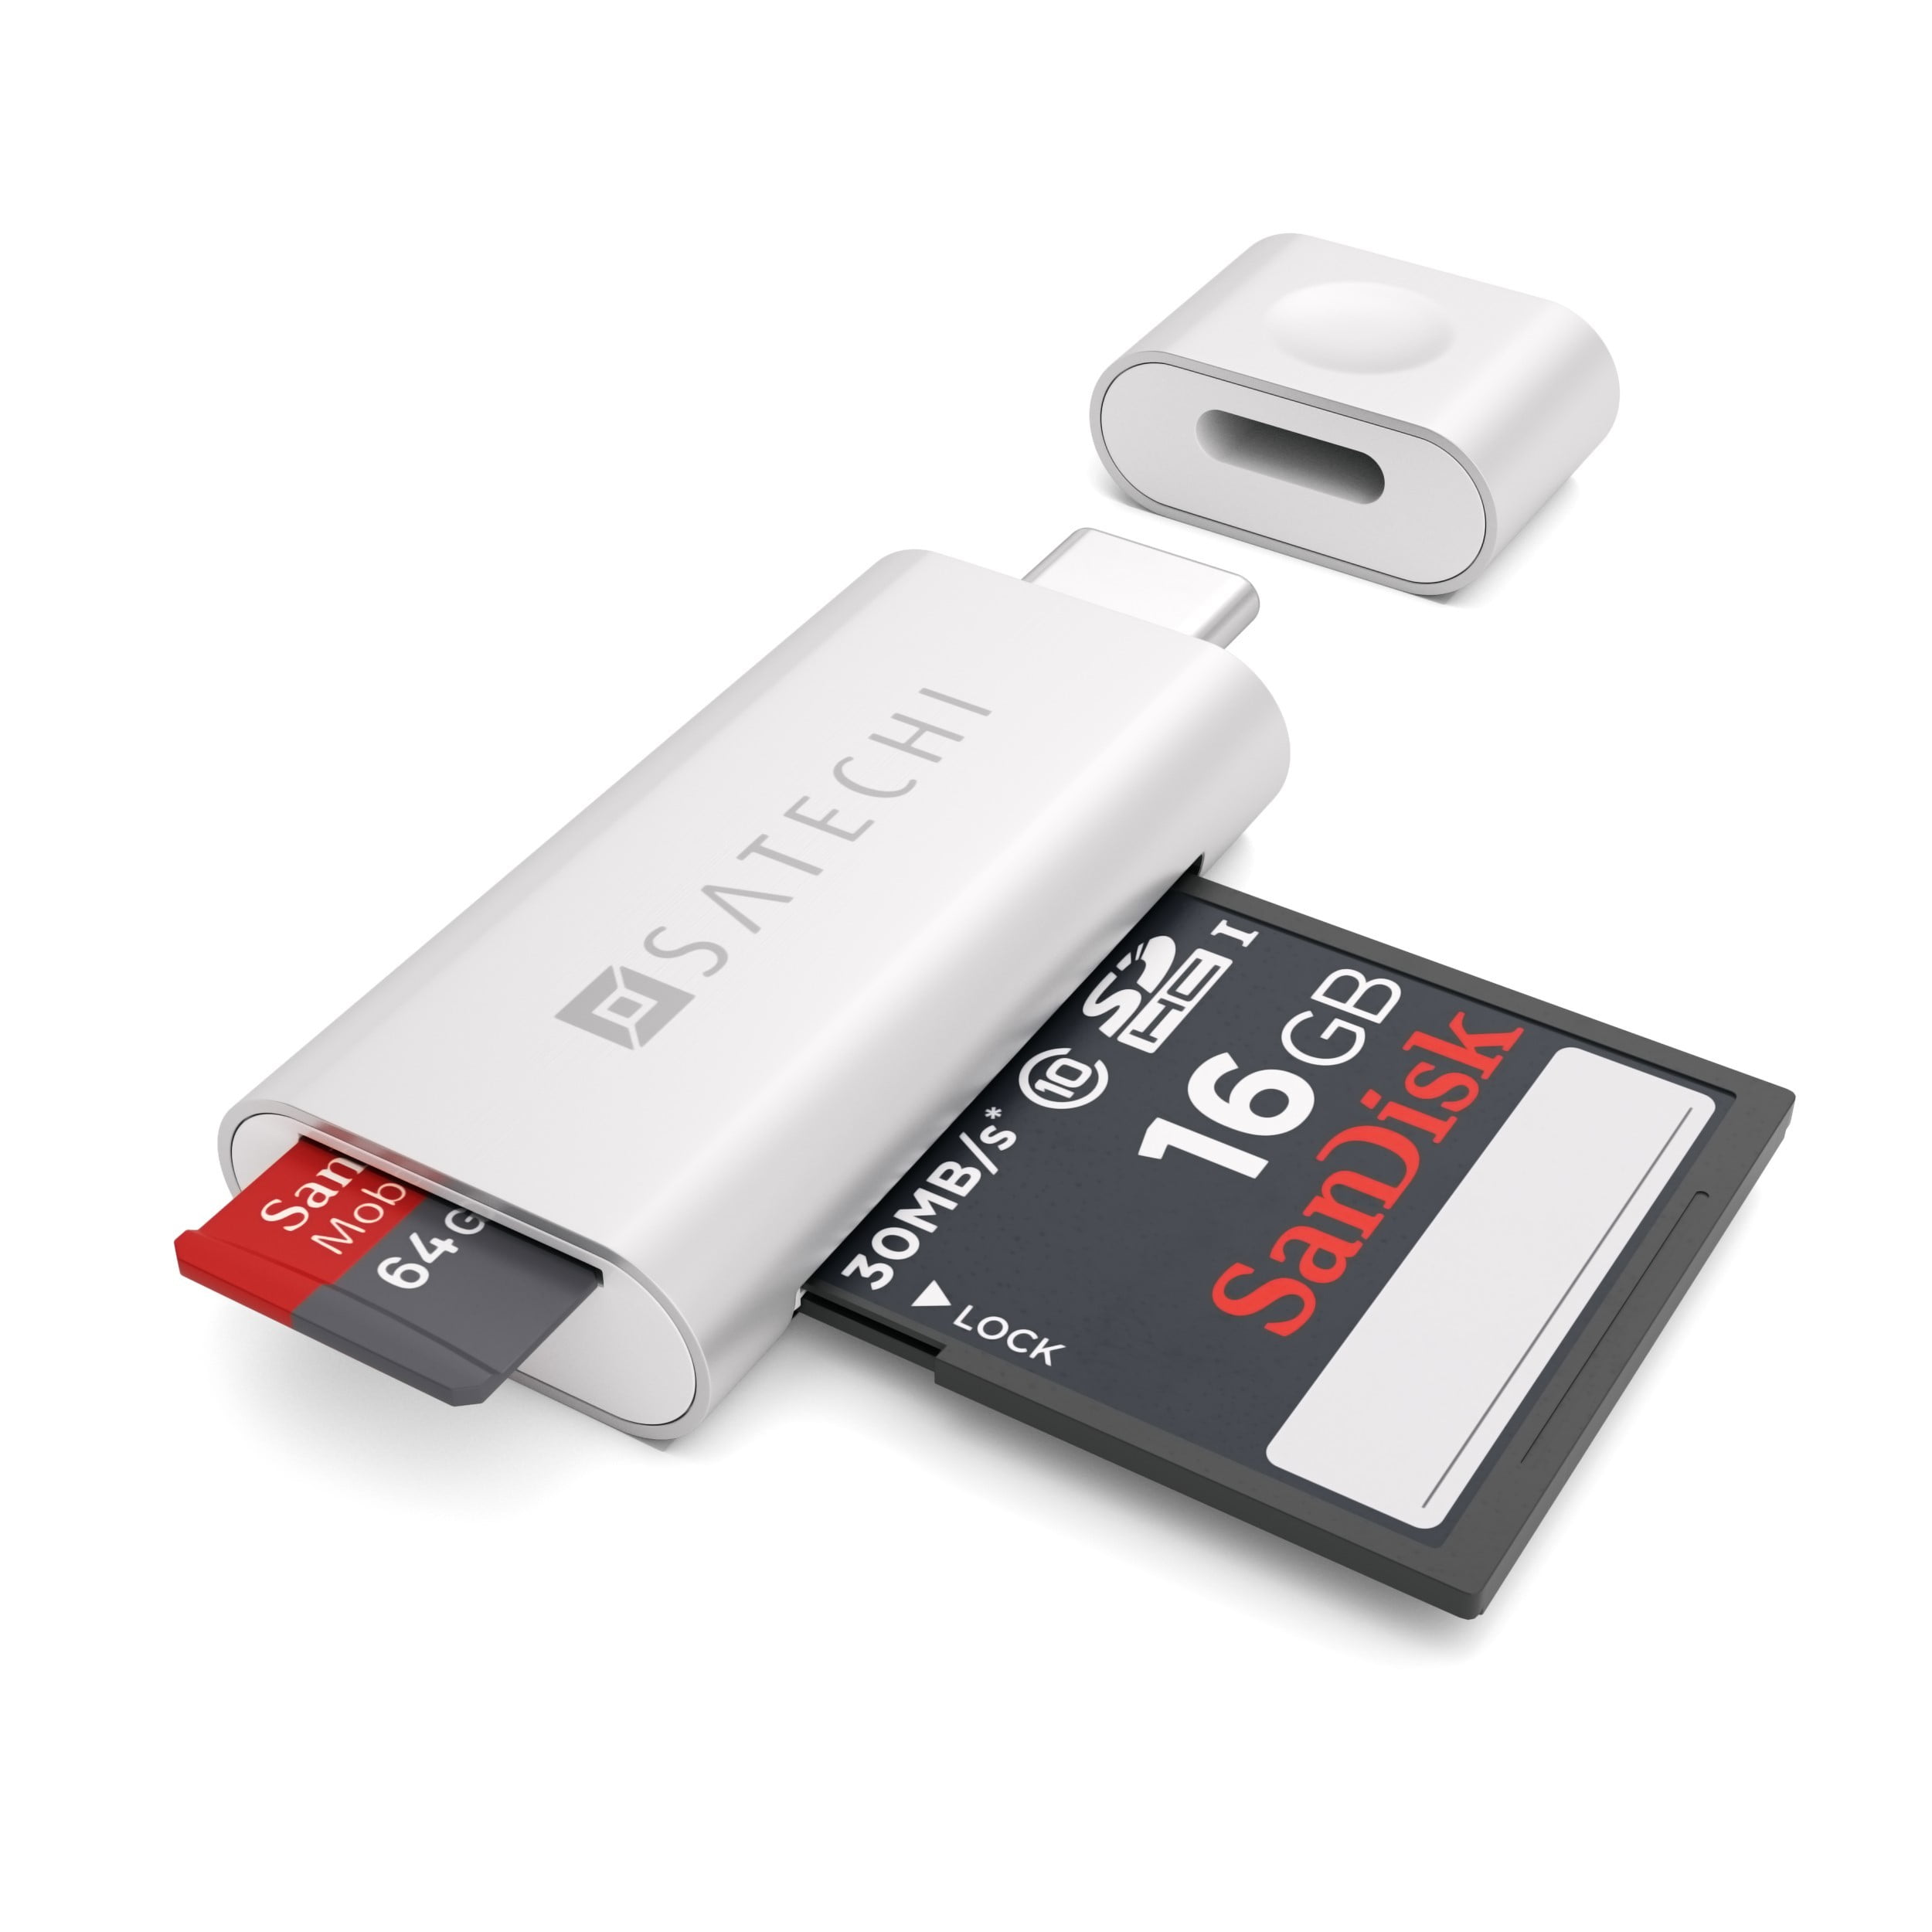 Карта памяти просмотр. Картридер Type-c MICROSD/SD. Картридер USB 3.0 SD Micro Card. Картридер для микро SD Type c. Satechi Aluminum Type-c Micro/SD Card Reader f.